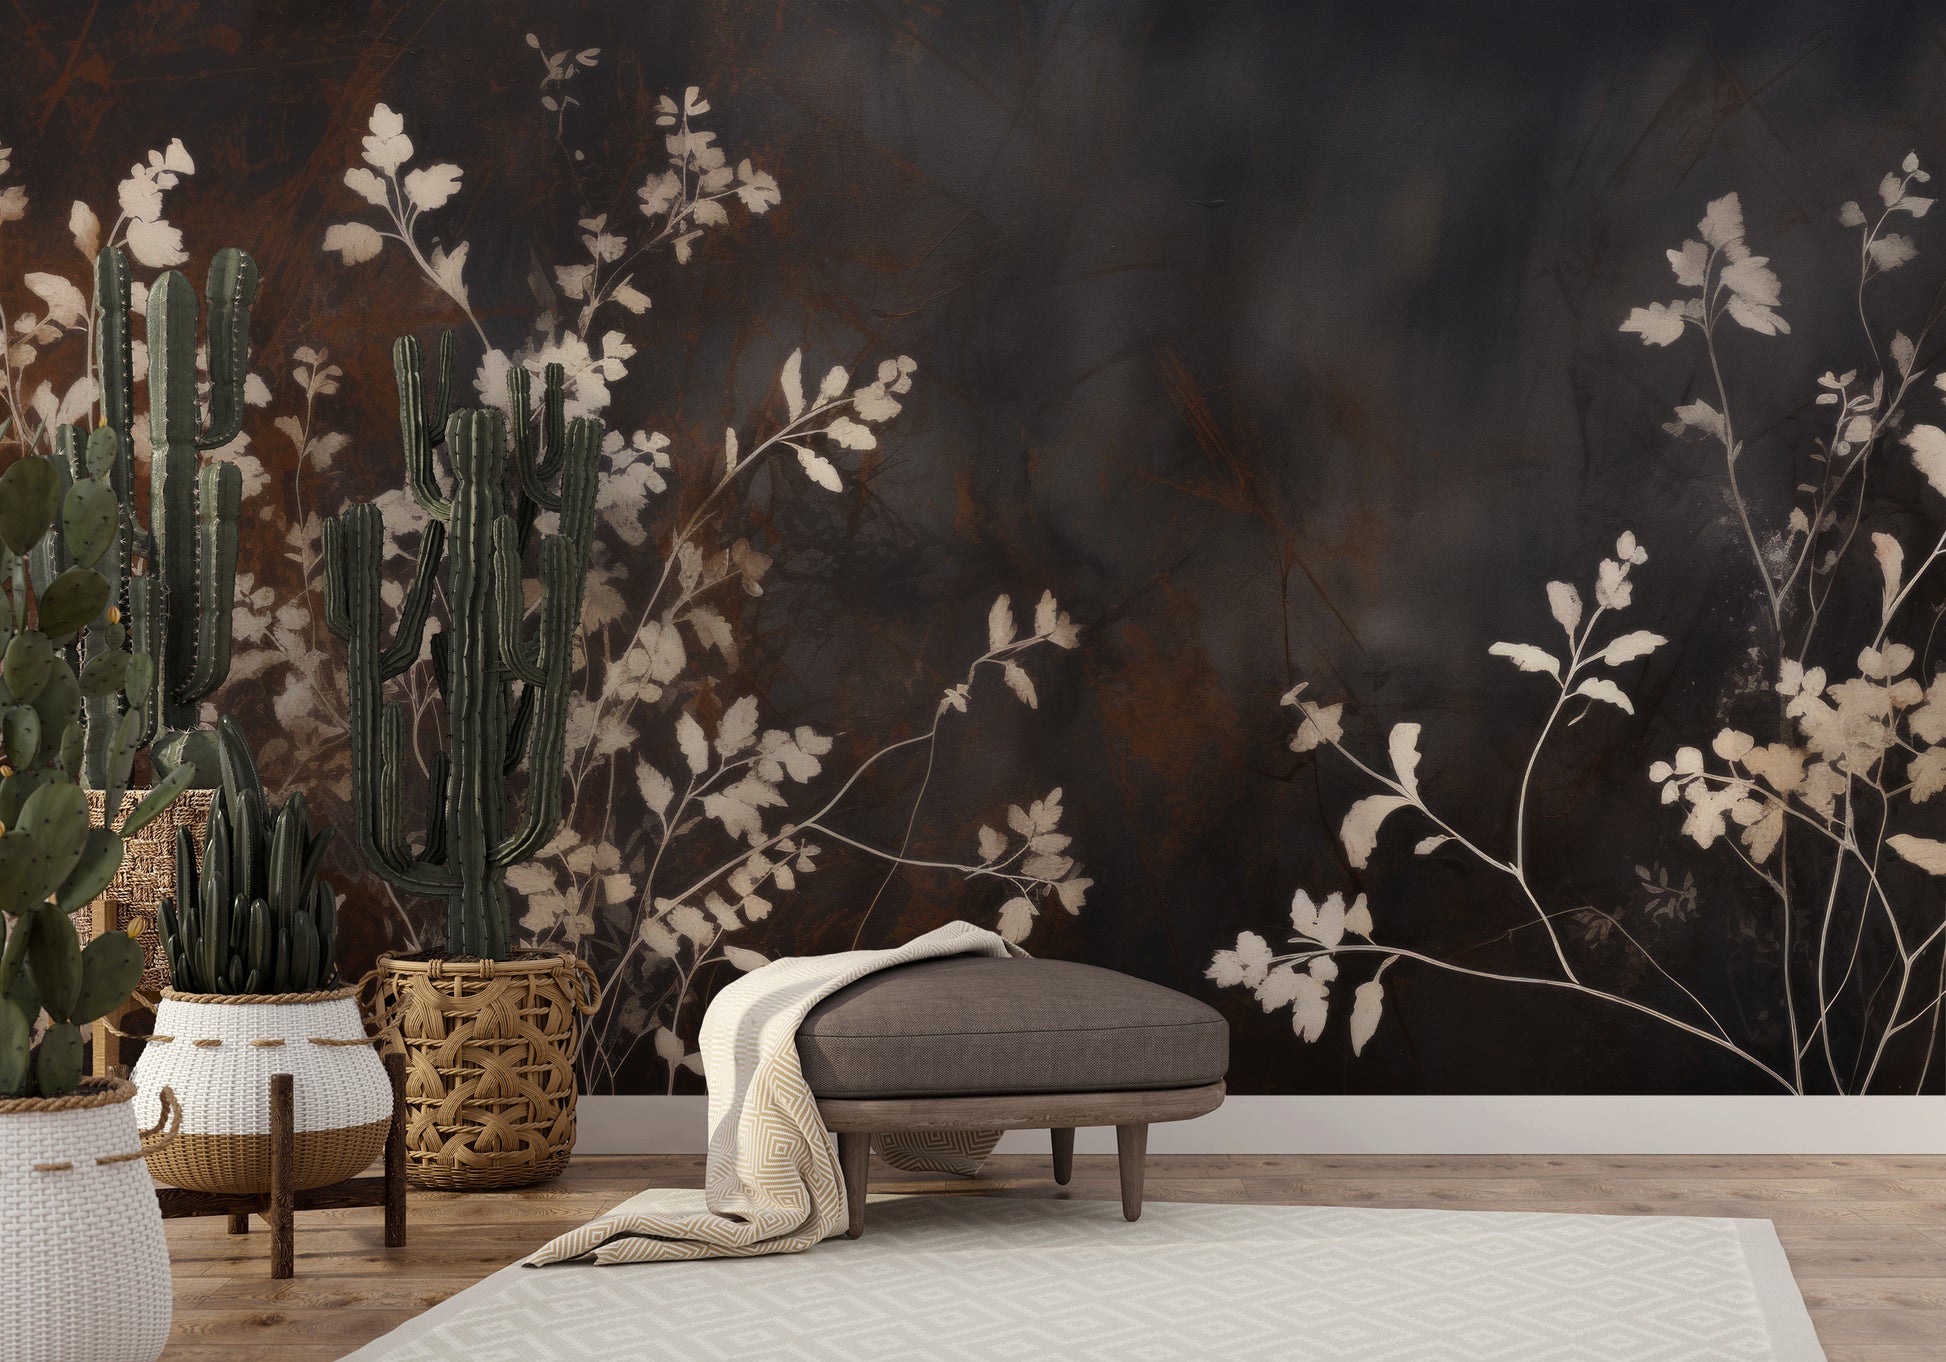 Fototapeta malowana o nazwie Elegant Shadow Flora pokazana w aranżacji wnętrza.